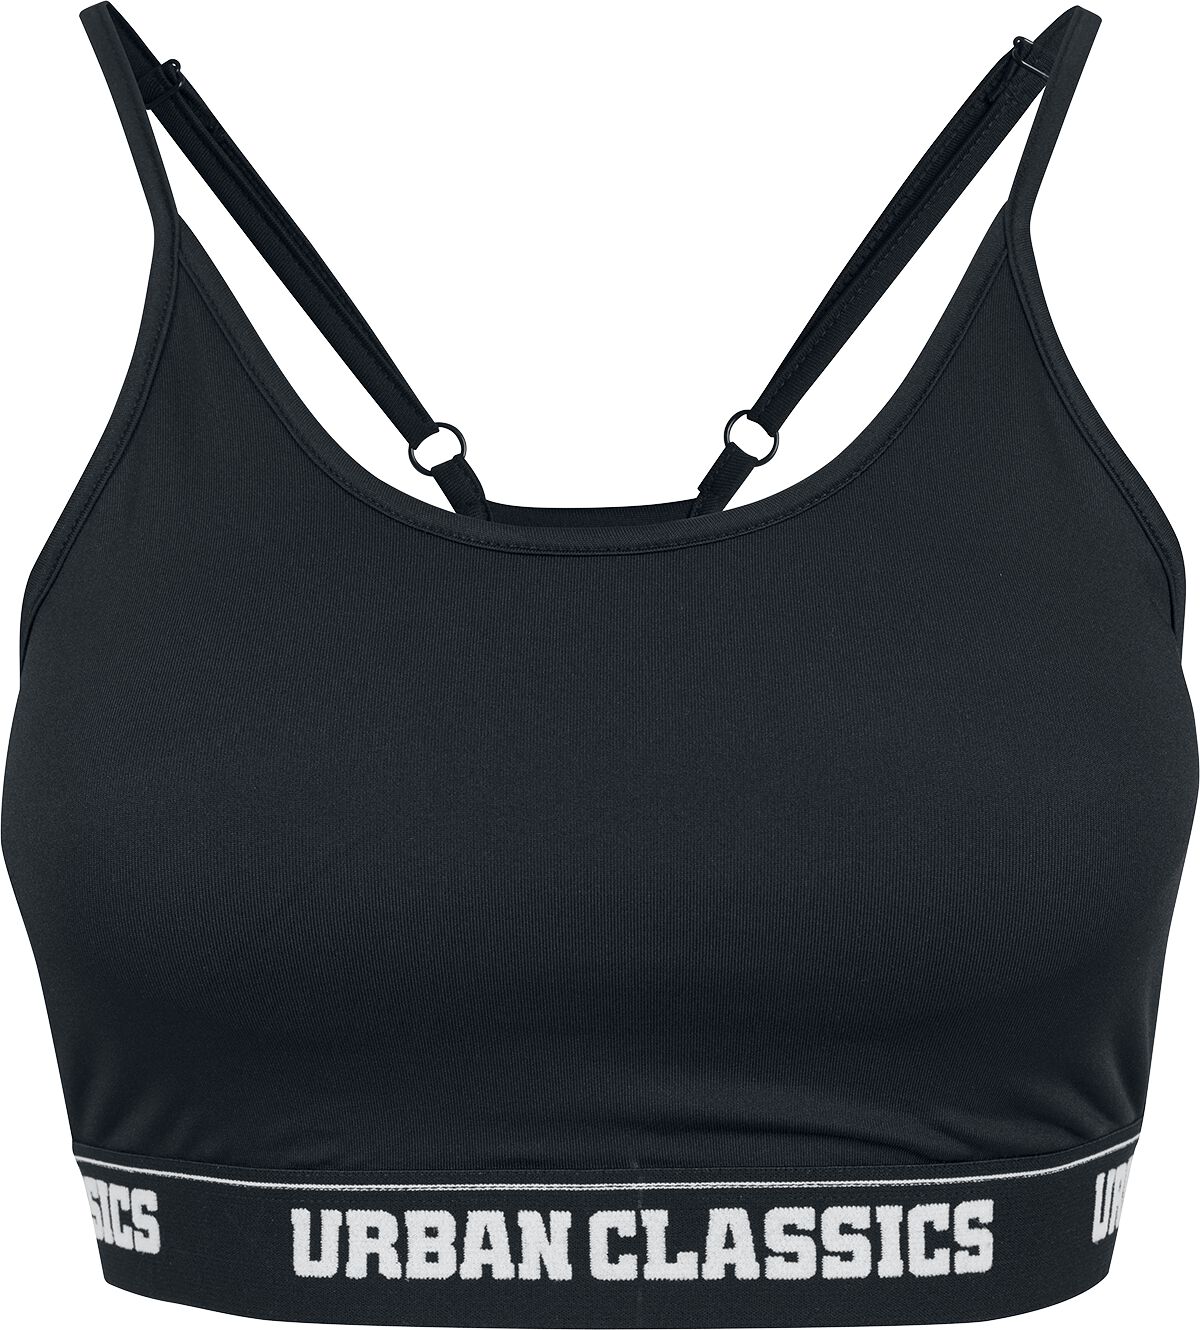 Bustier de Urban Classics - Soutien-Gorge De Sport - XS à L - pour Femme - noir